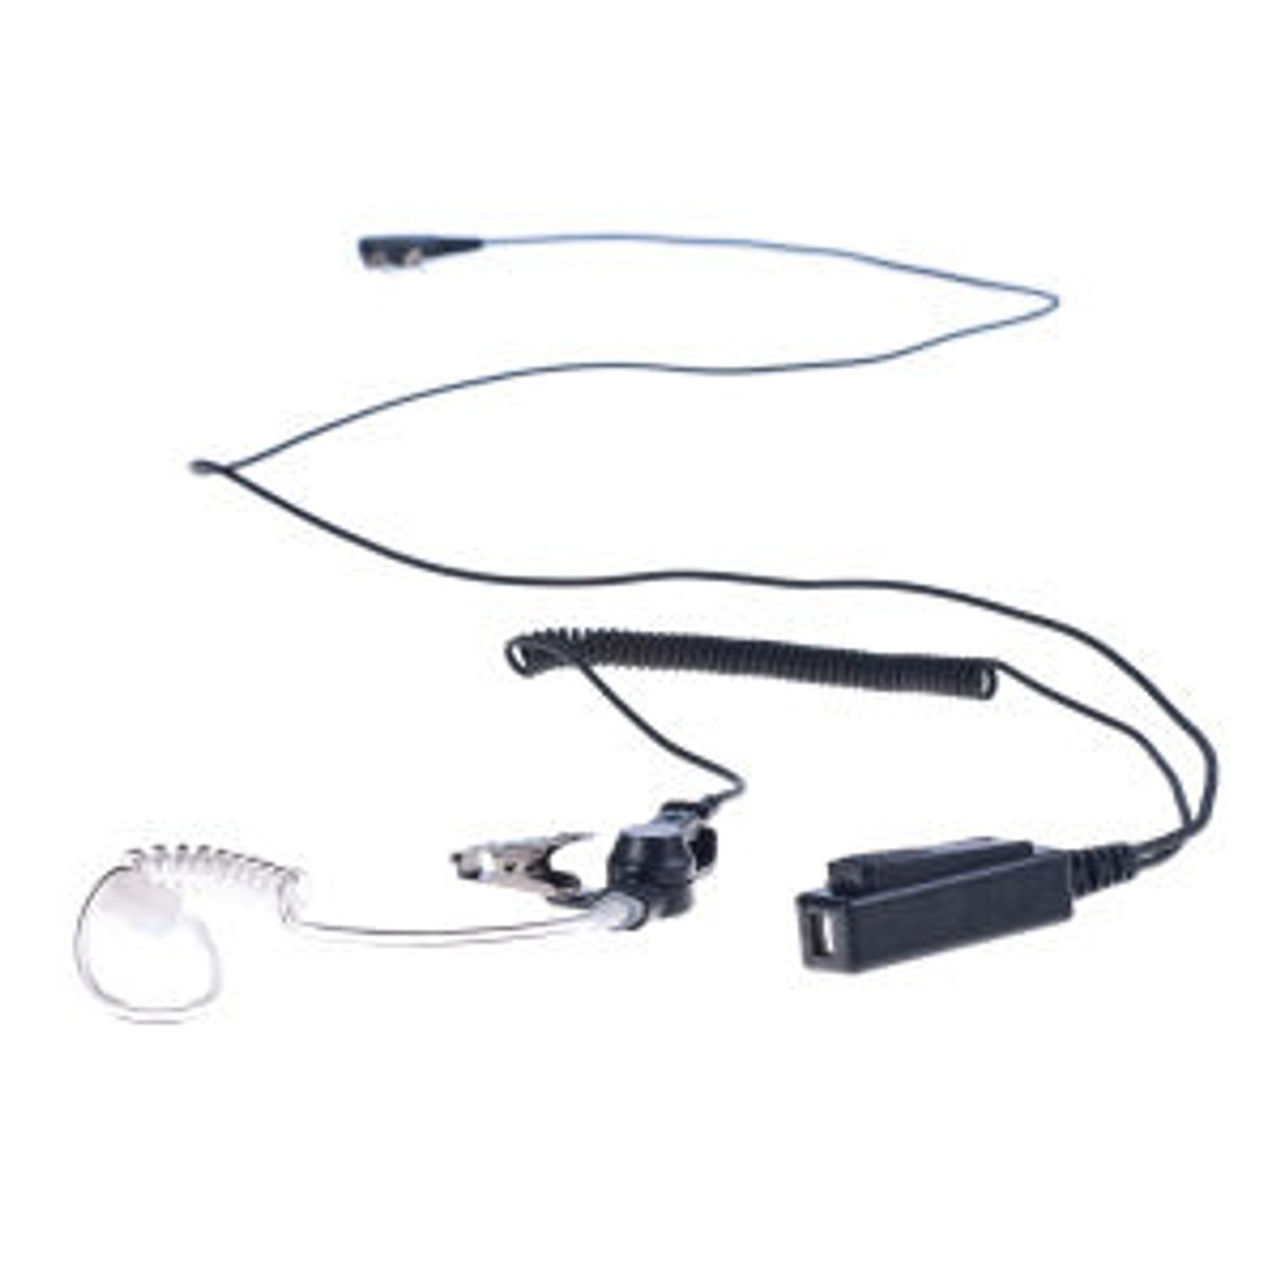 M/A-Com P5130 1-Wire Surveillance Kit